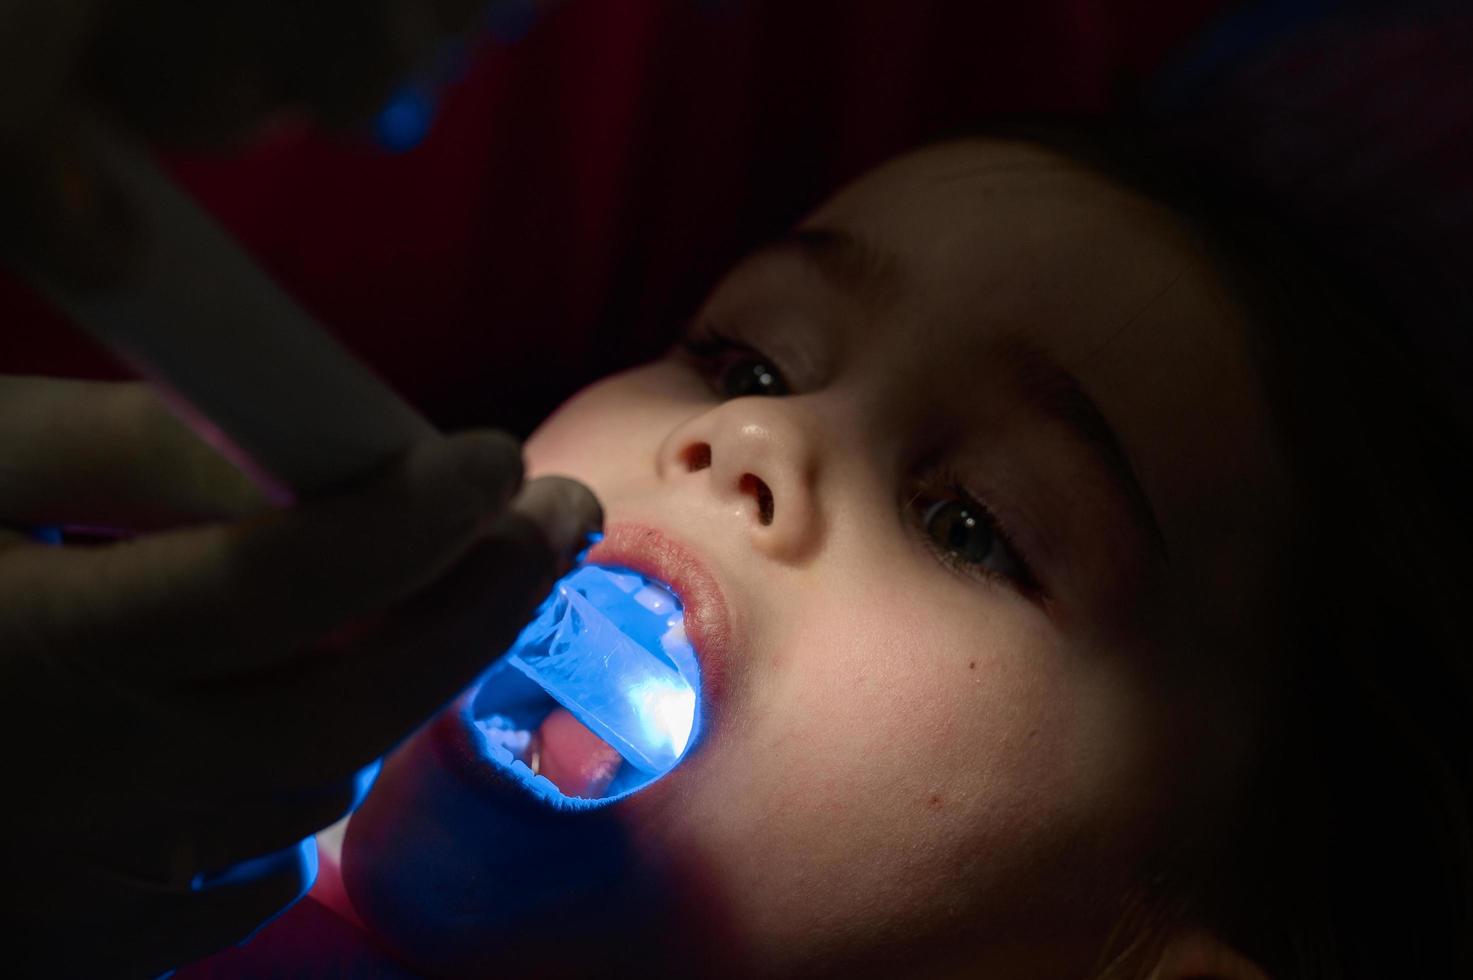 ultraviolettes licht in der zahnheilkunde hält der zahnarzt ein gerät mit ultraviolettem licht, um die füllung im kinderzahn schnell zu versiegeln. foto